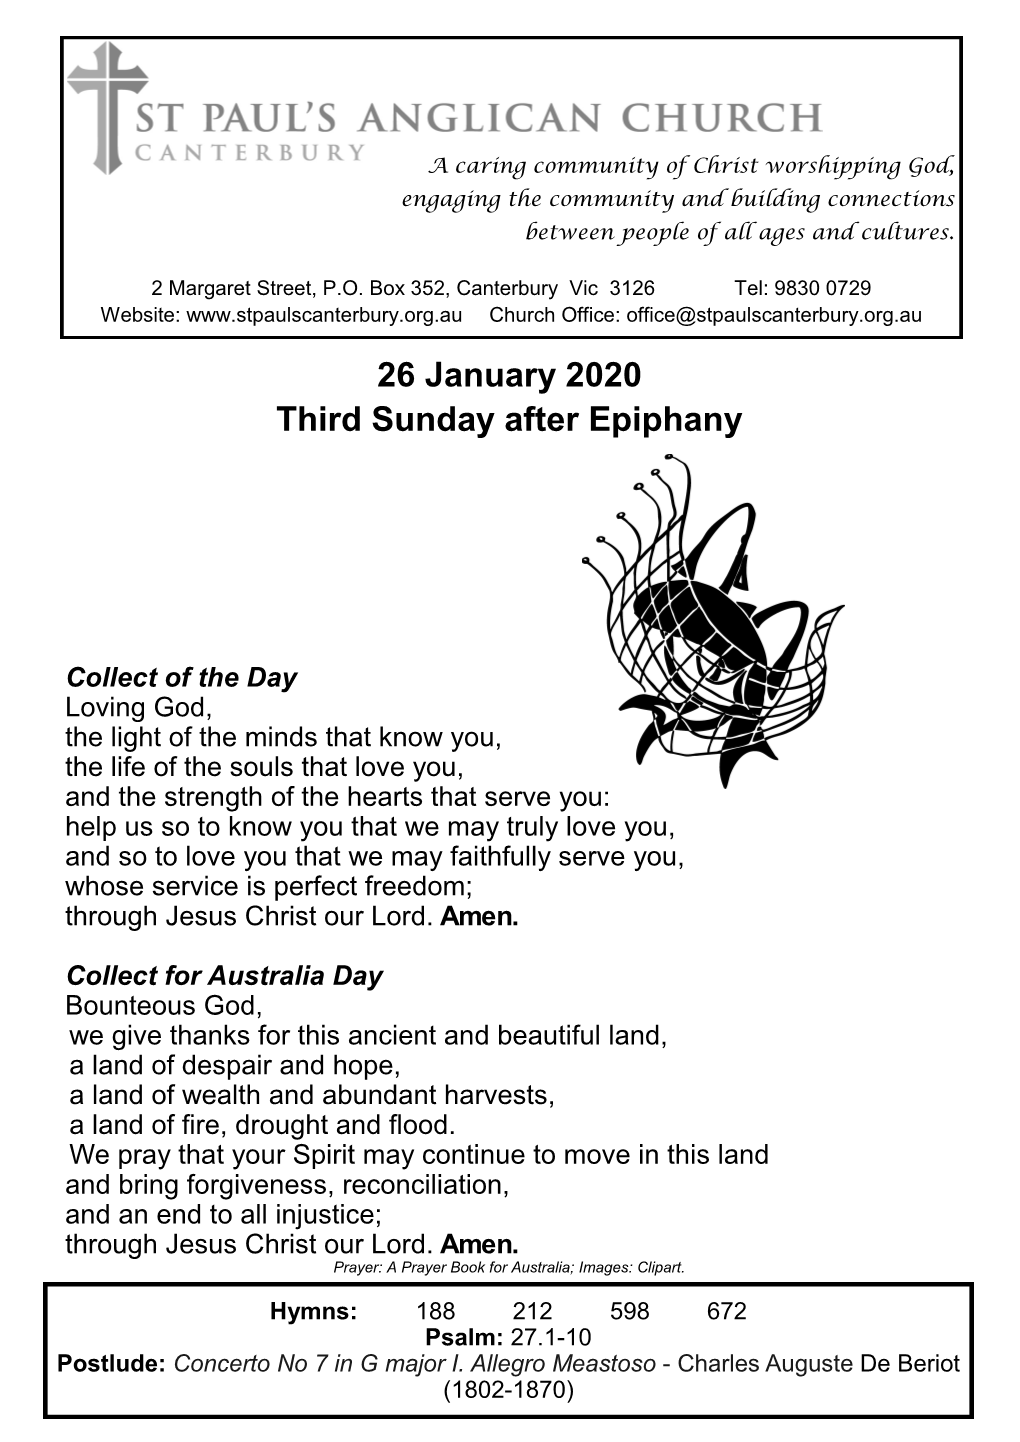 26 January 2020 Third Sunday After Epiphany